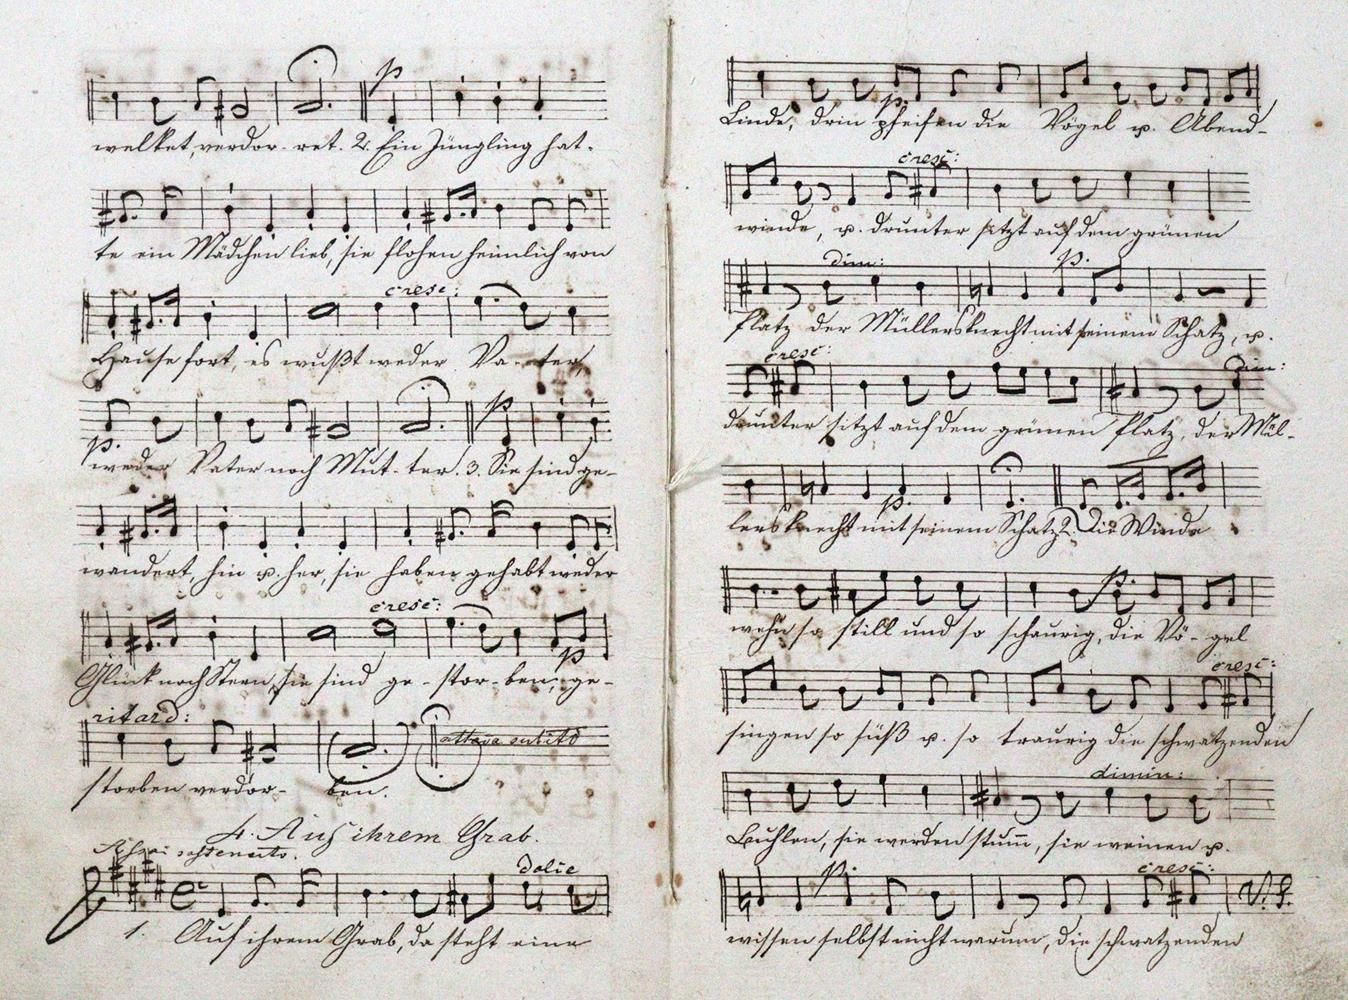 Papst,W. Lieder für Sopran, Alt, Tenor u. Basso, componirt von Felix Mendels(s)o&hellip;